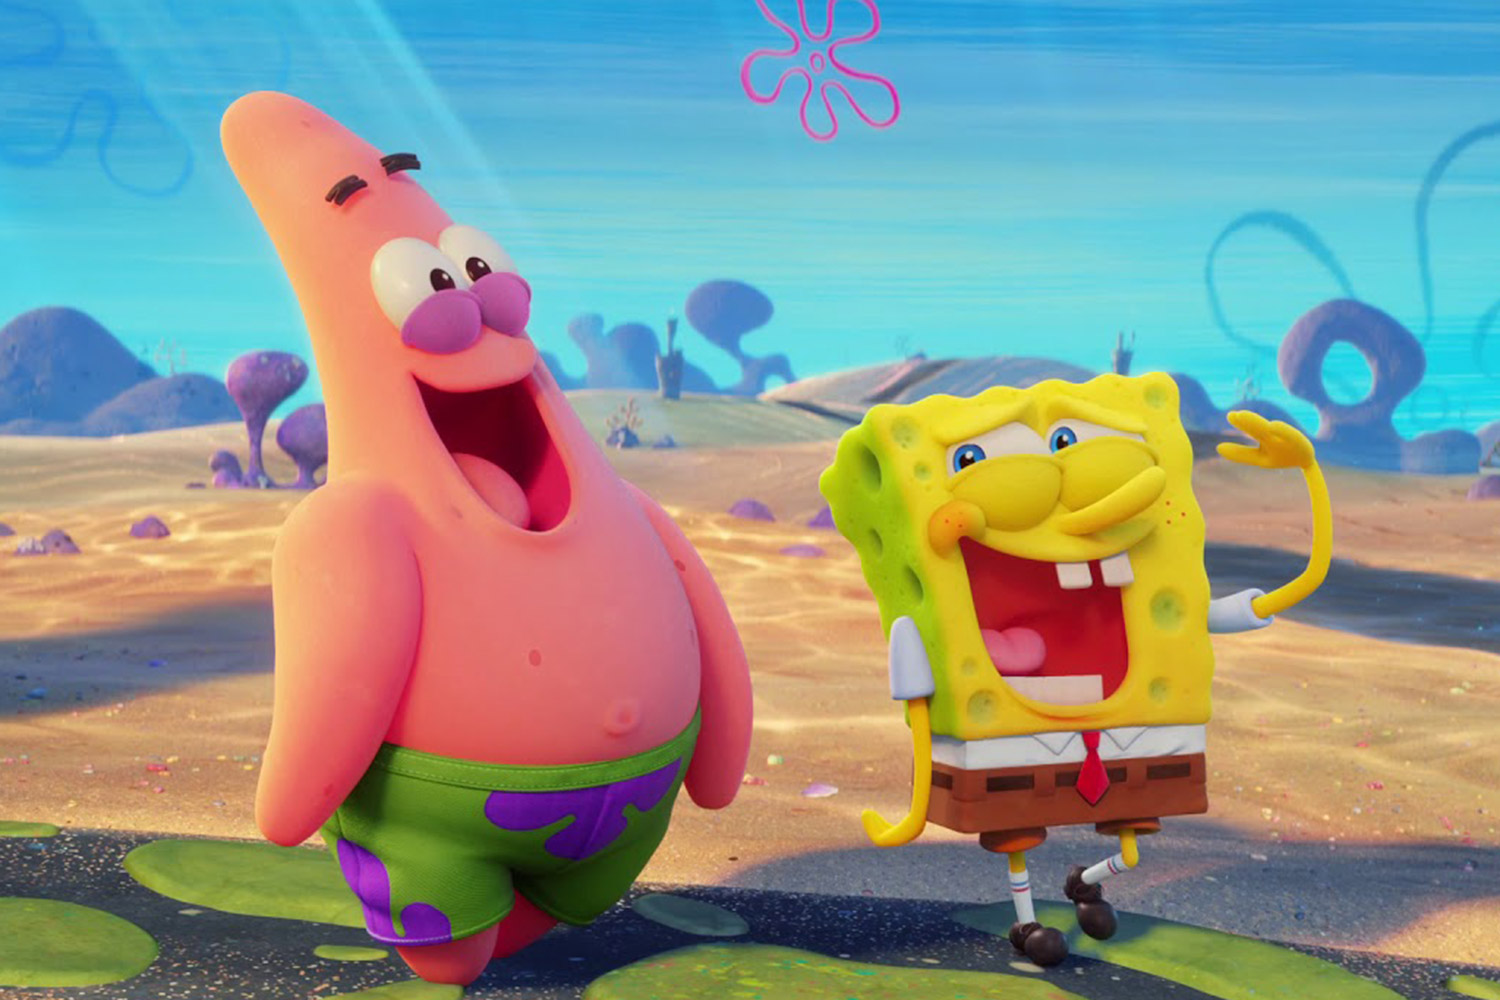 Watch SpongeBob SquarePants: The Cosmic Shake on Kidoodle.TV